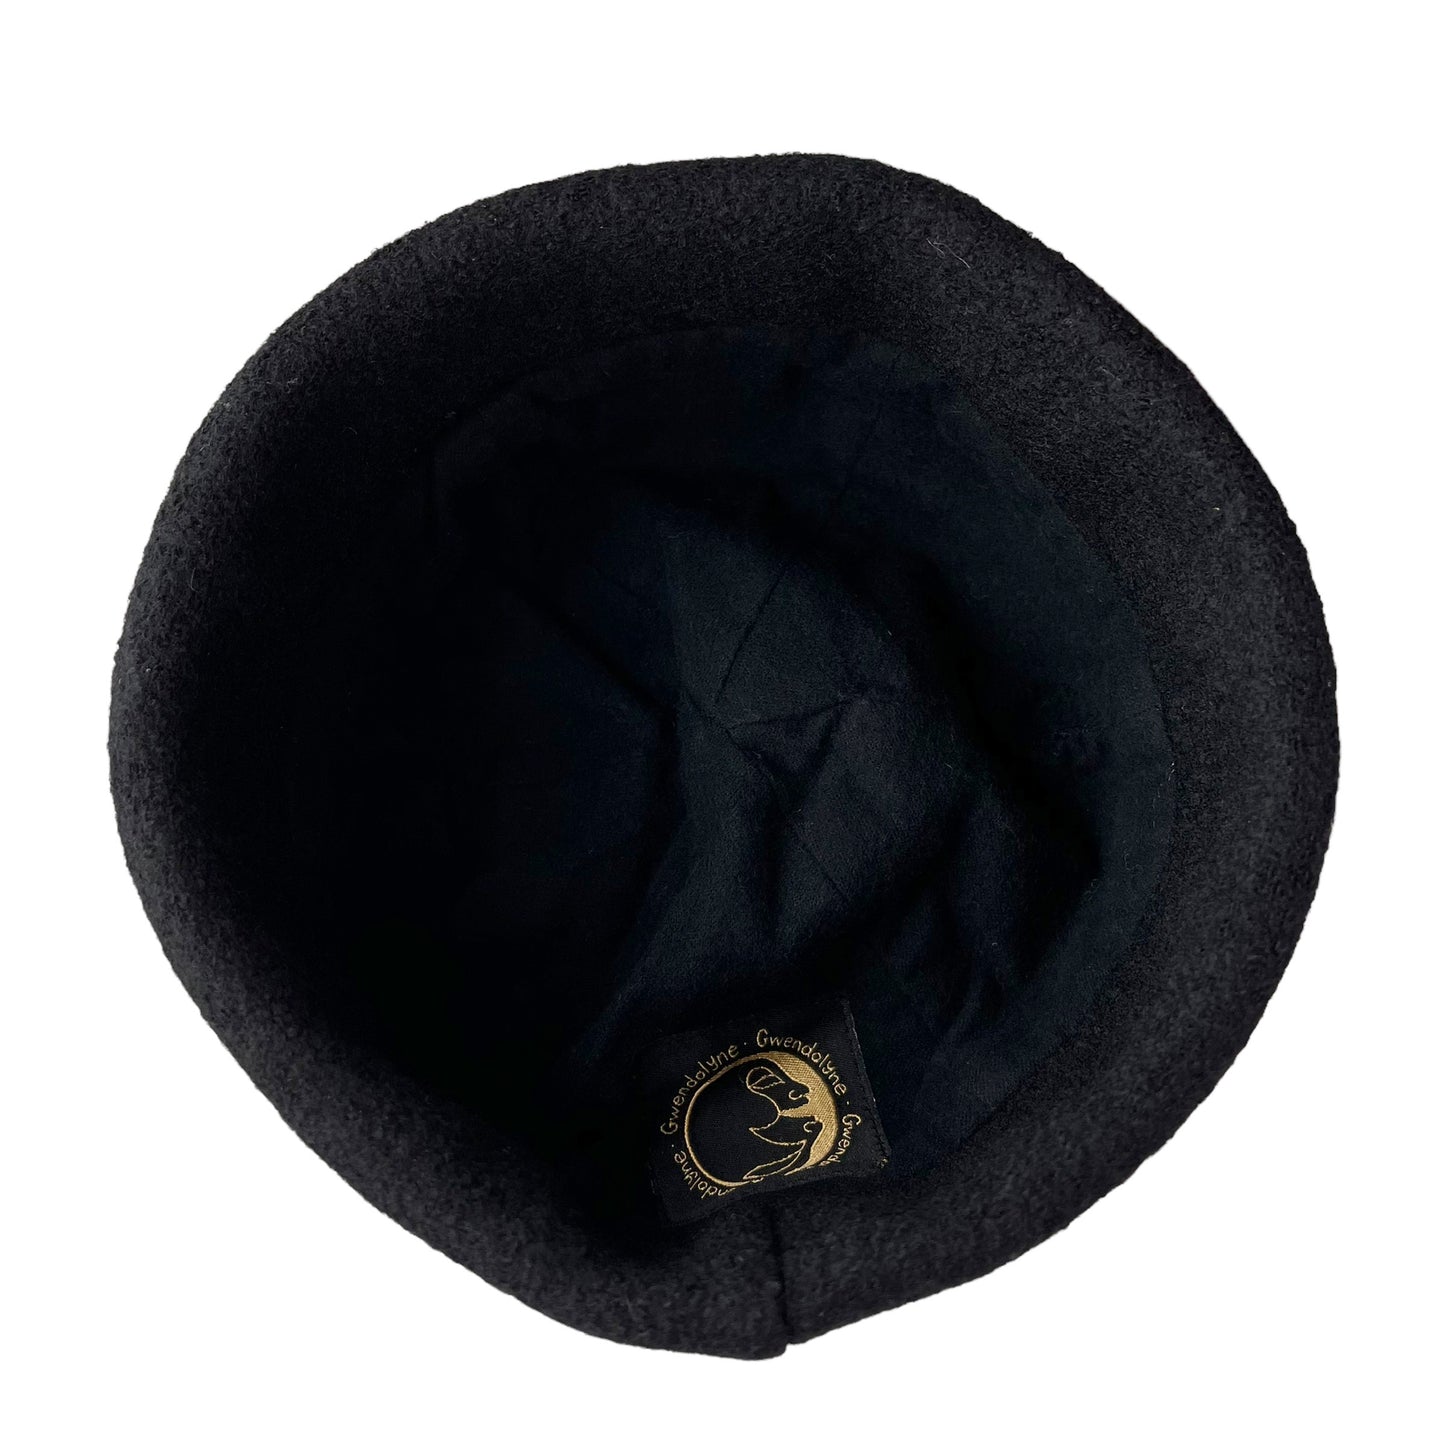 Beanie Wool Cap Slouchy Toque Small Royal Blue Black